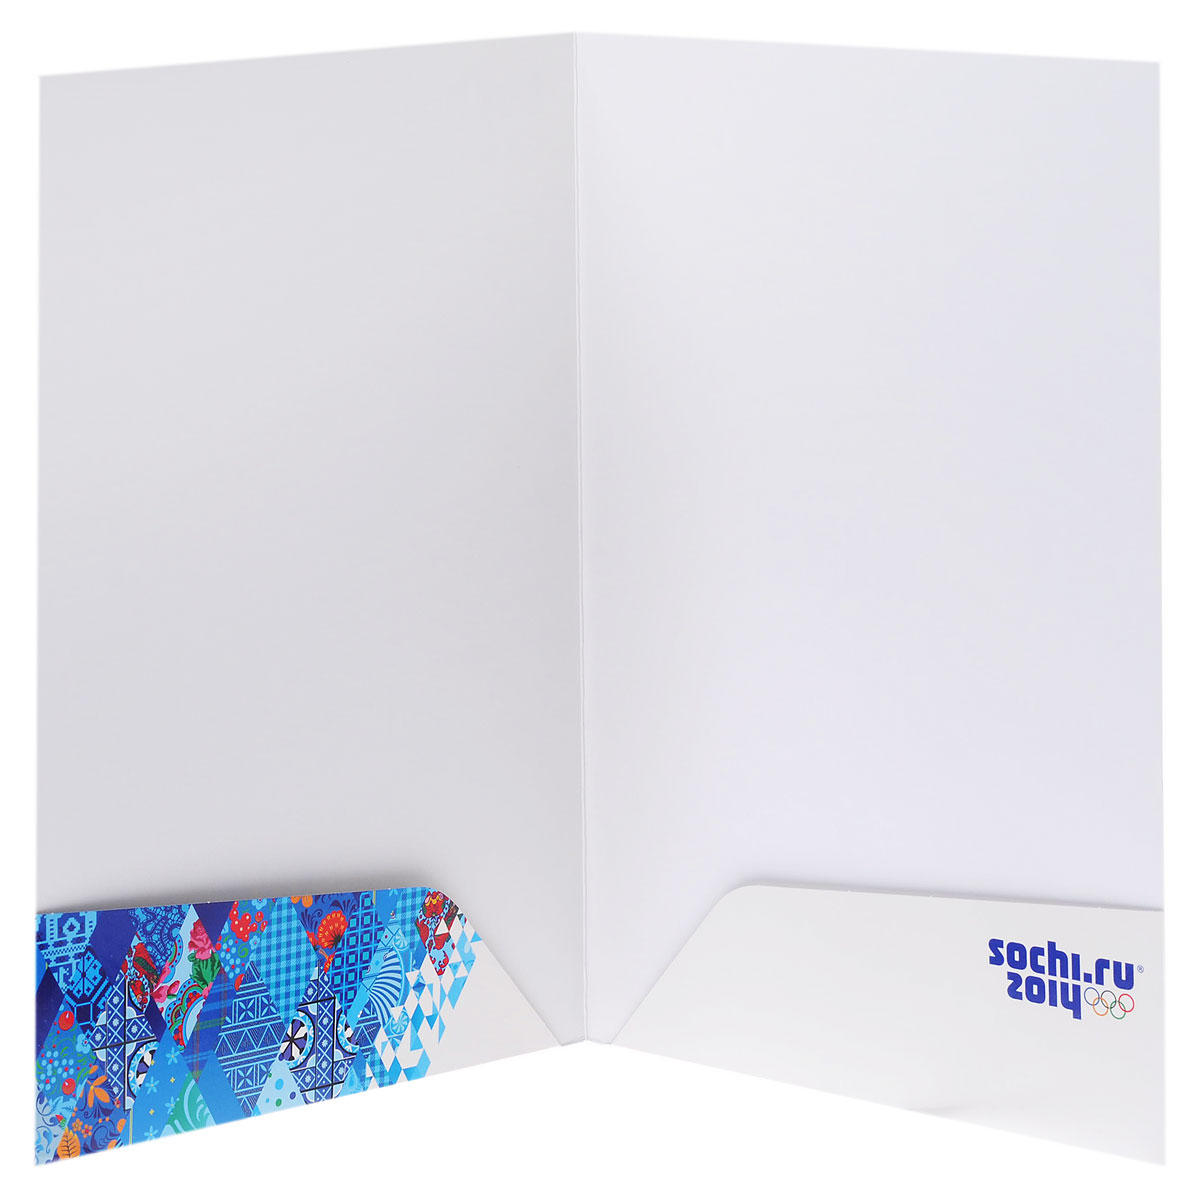 Папка для документов Hatber "Сочи-2014: Образ игр", с карманами, цвет: белый, голубой. Формат А4